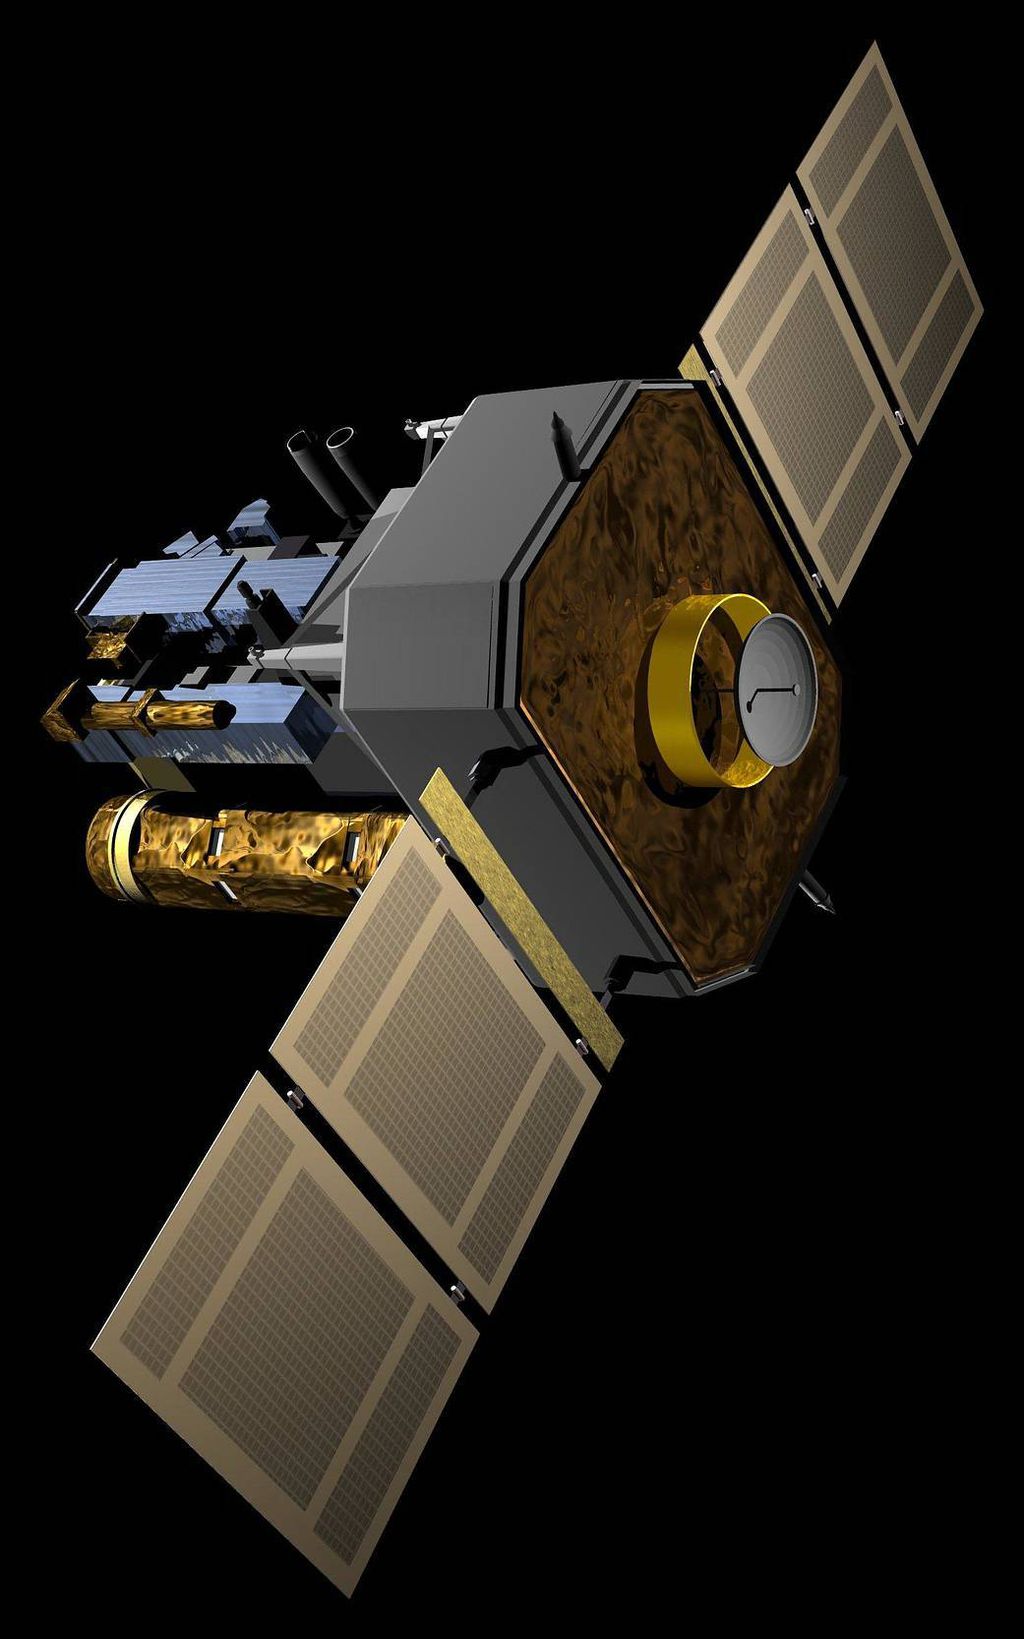 Cerca de 70 missões, como o observatório SOHO, já foram lançadas para estudar o Sol (Imagem: Reprodução/NASA/ESA)